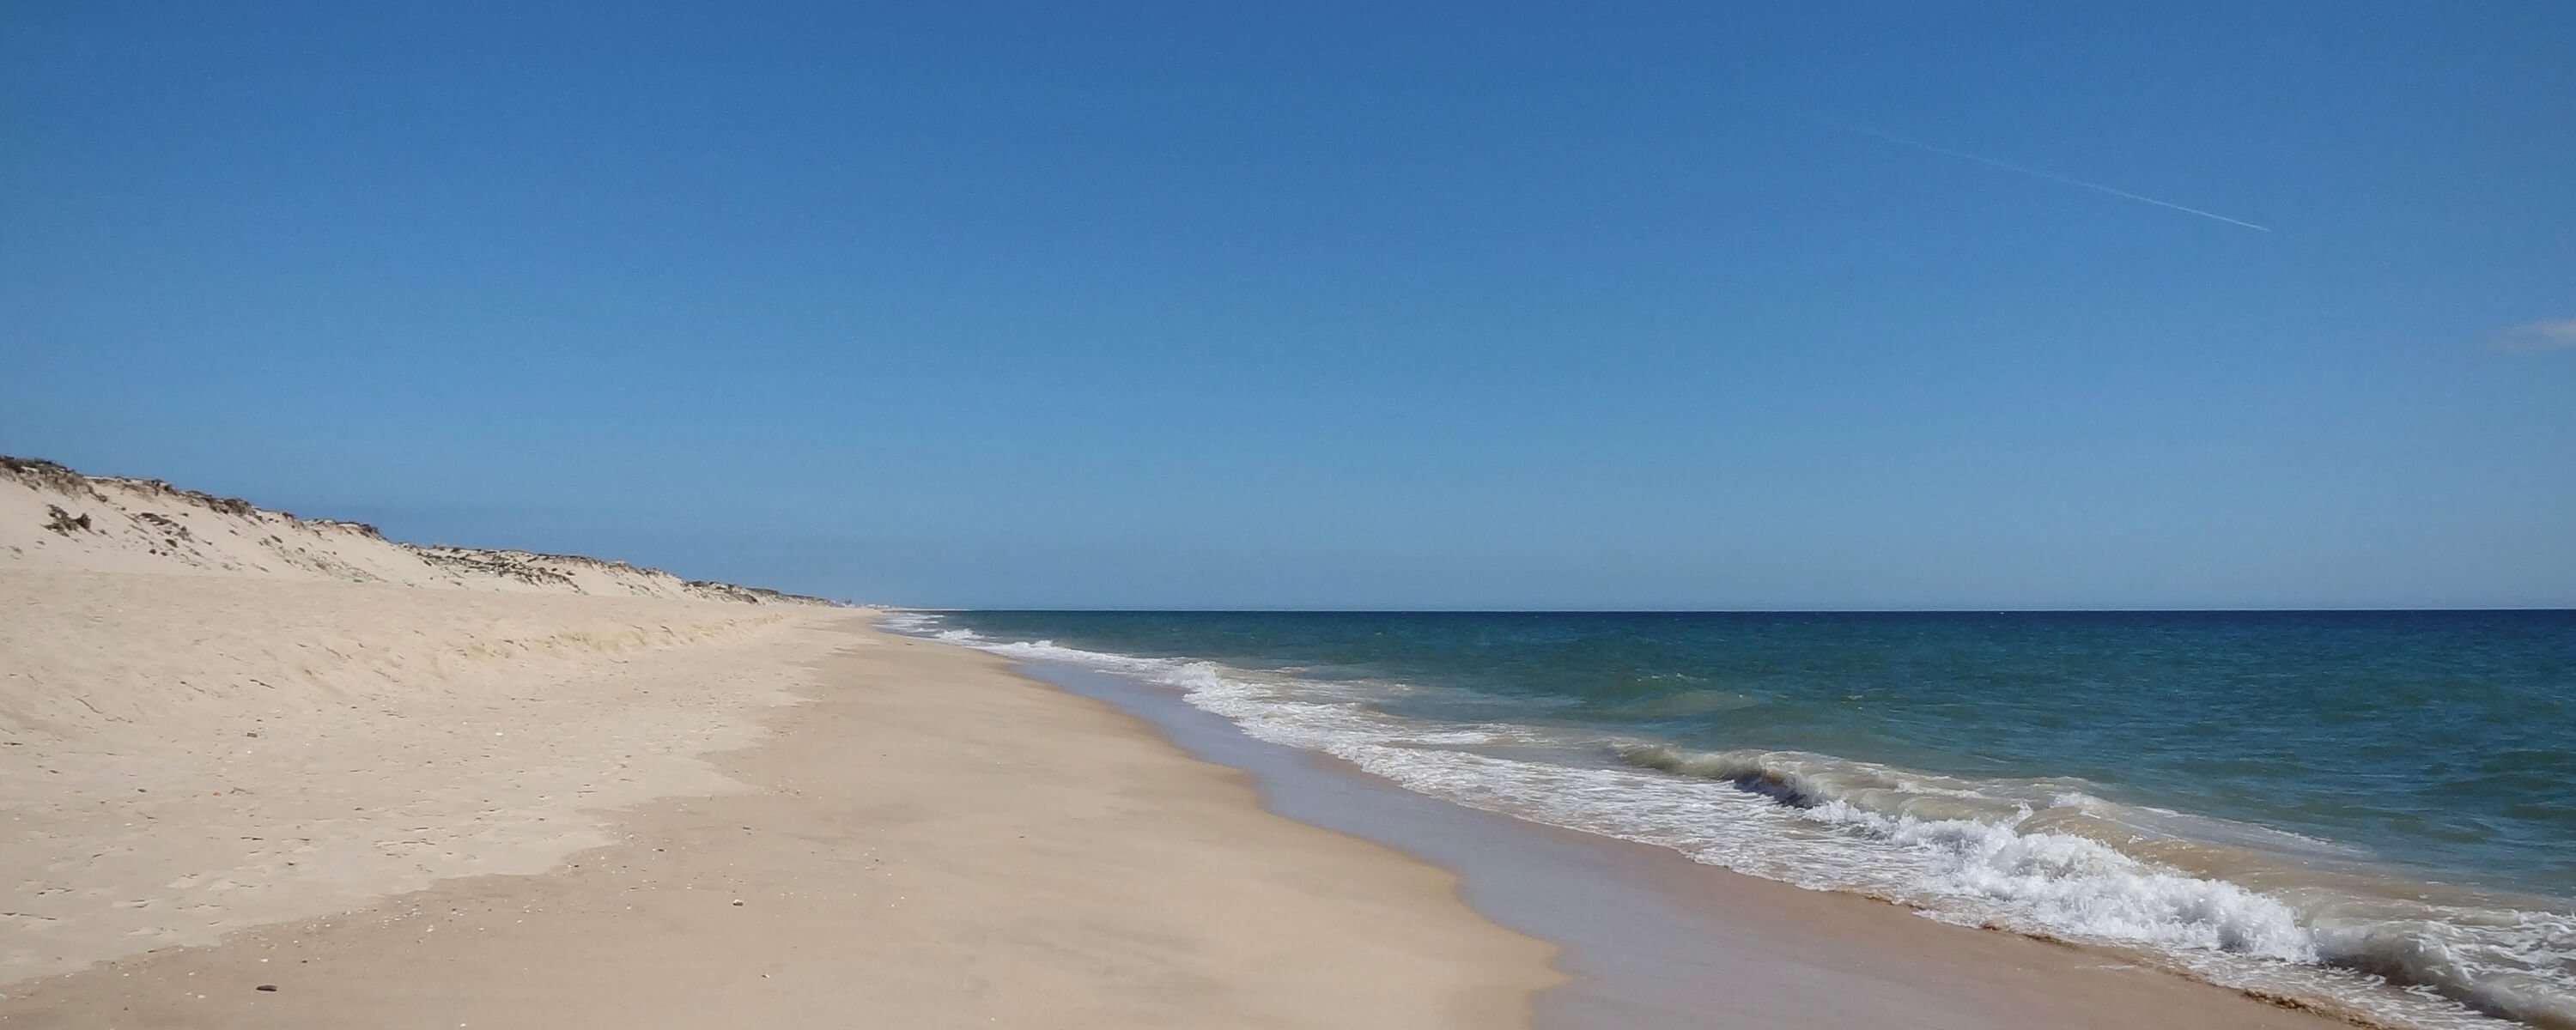 dunas living algarve beach portugal